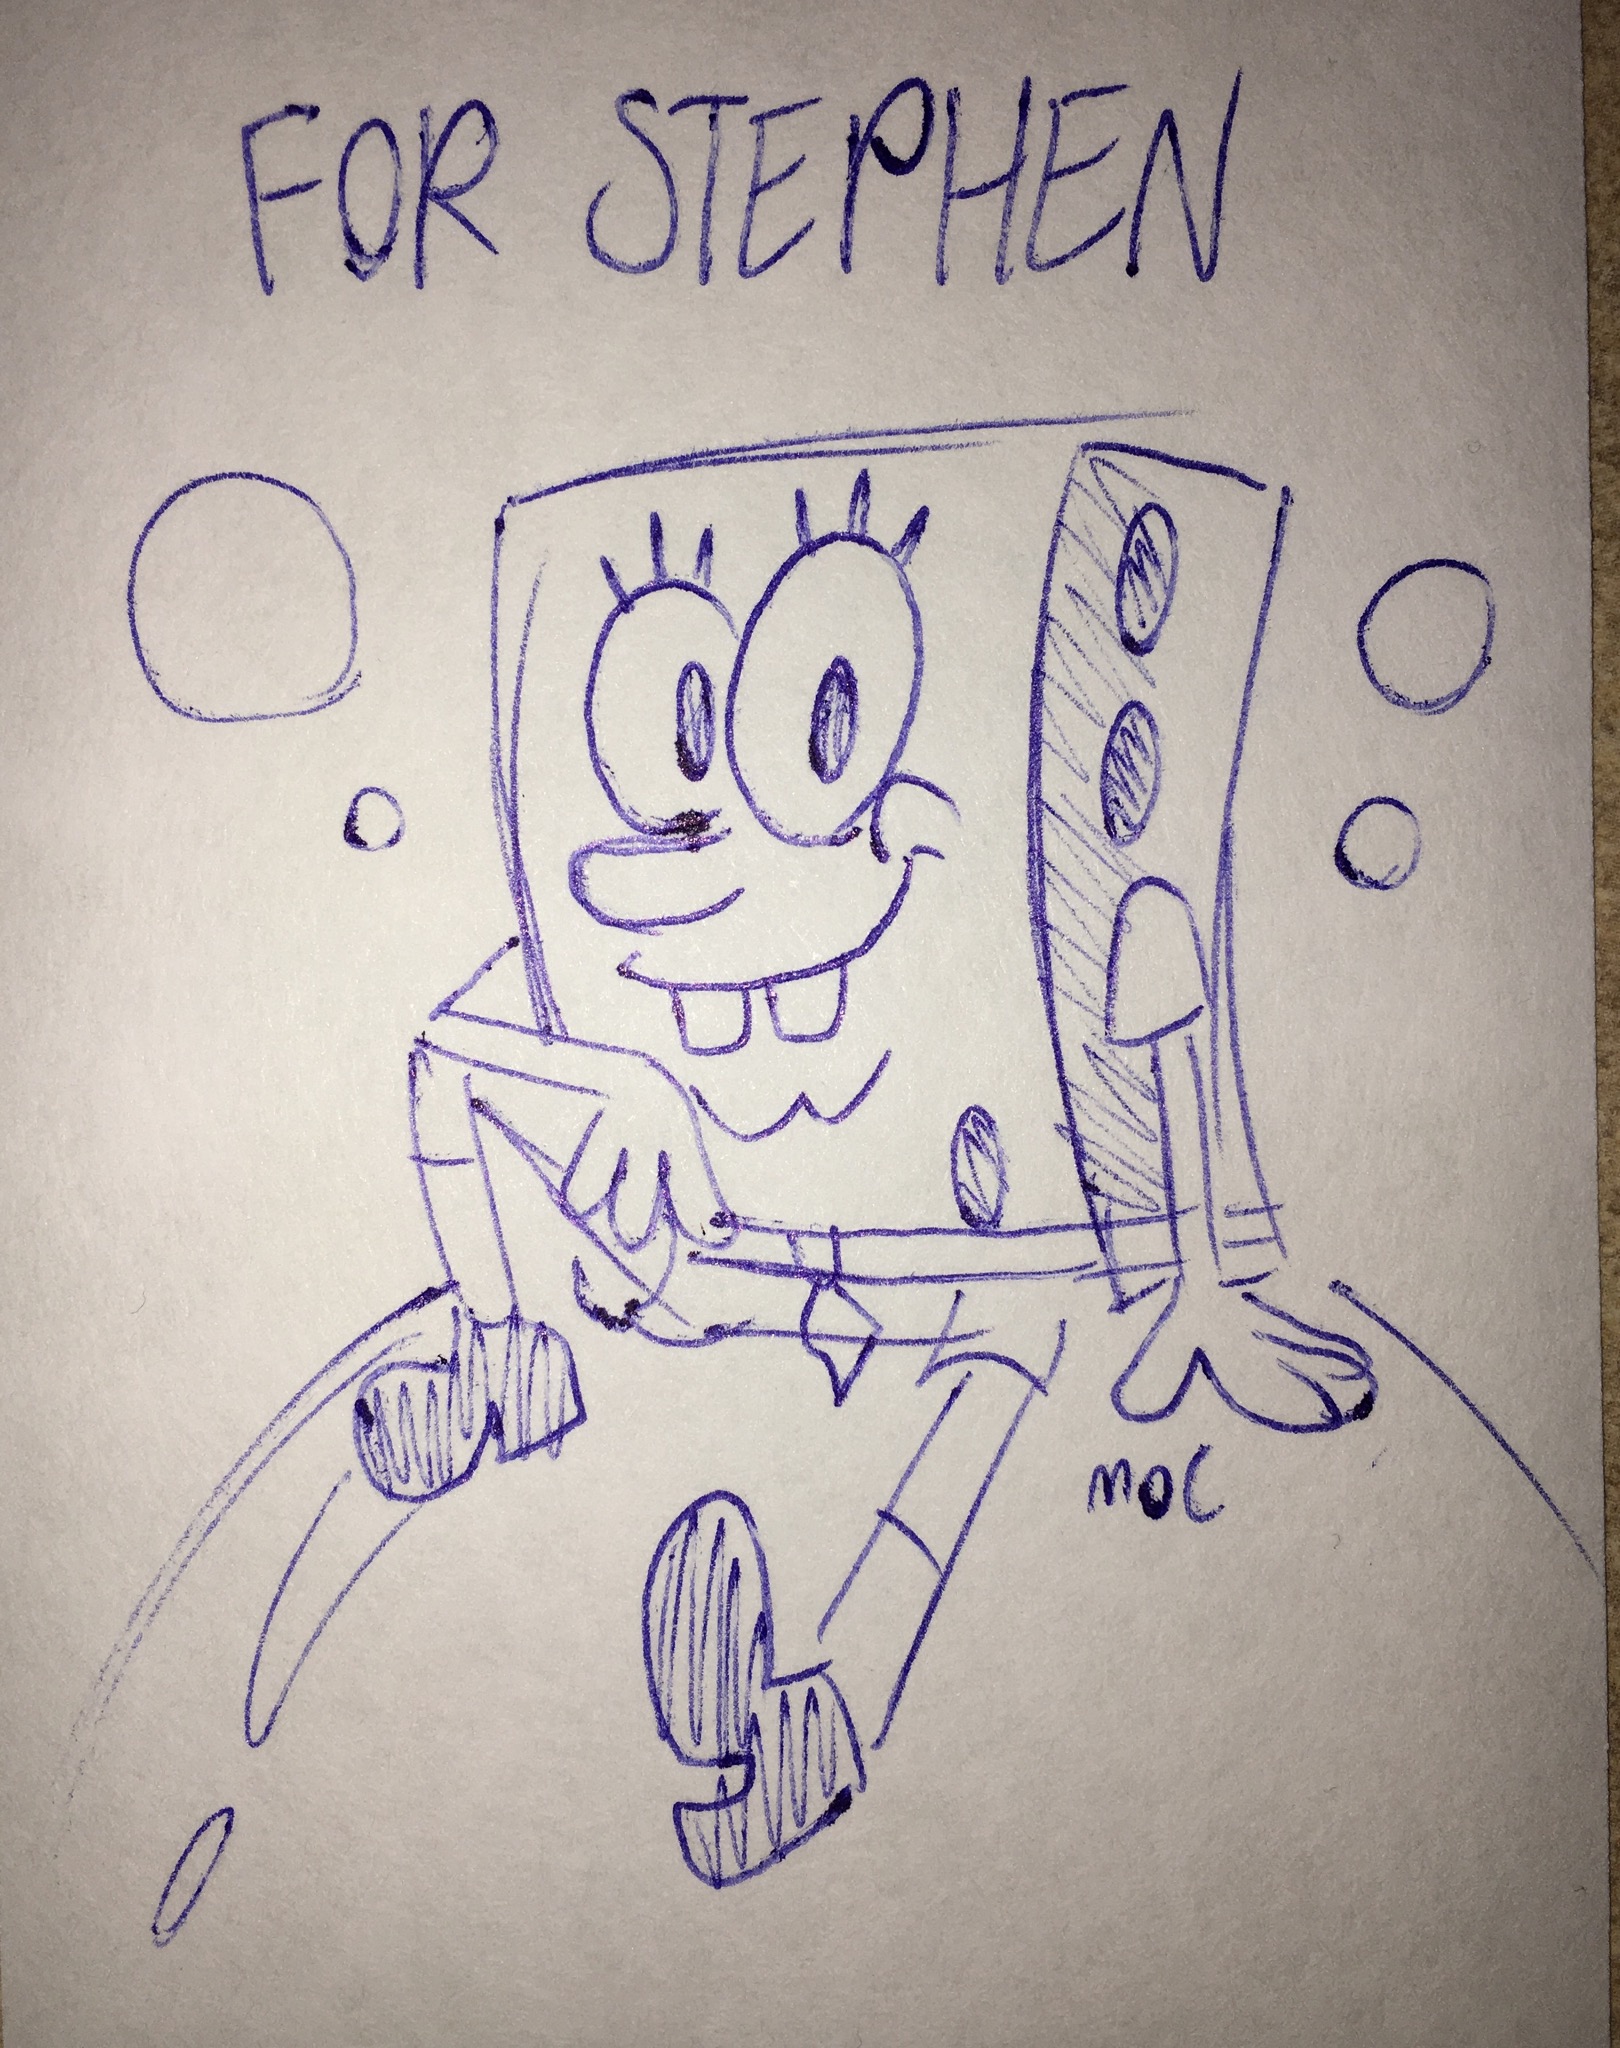 SpongeBob for Stephen by madoldcrow1105 on DeviantArt